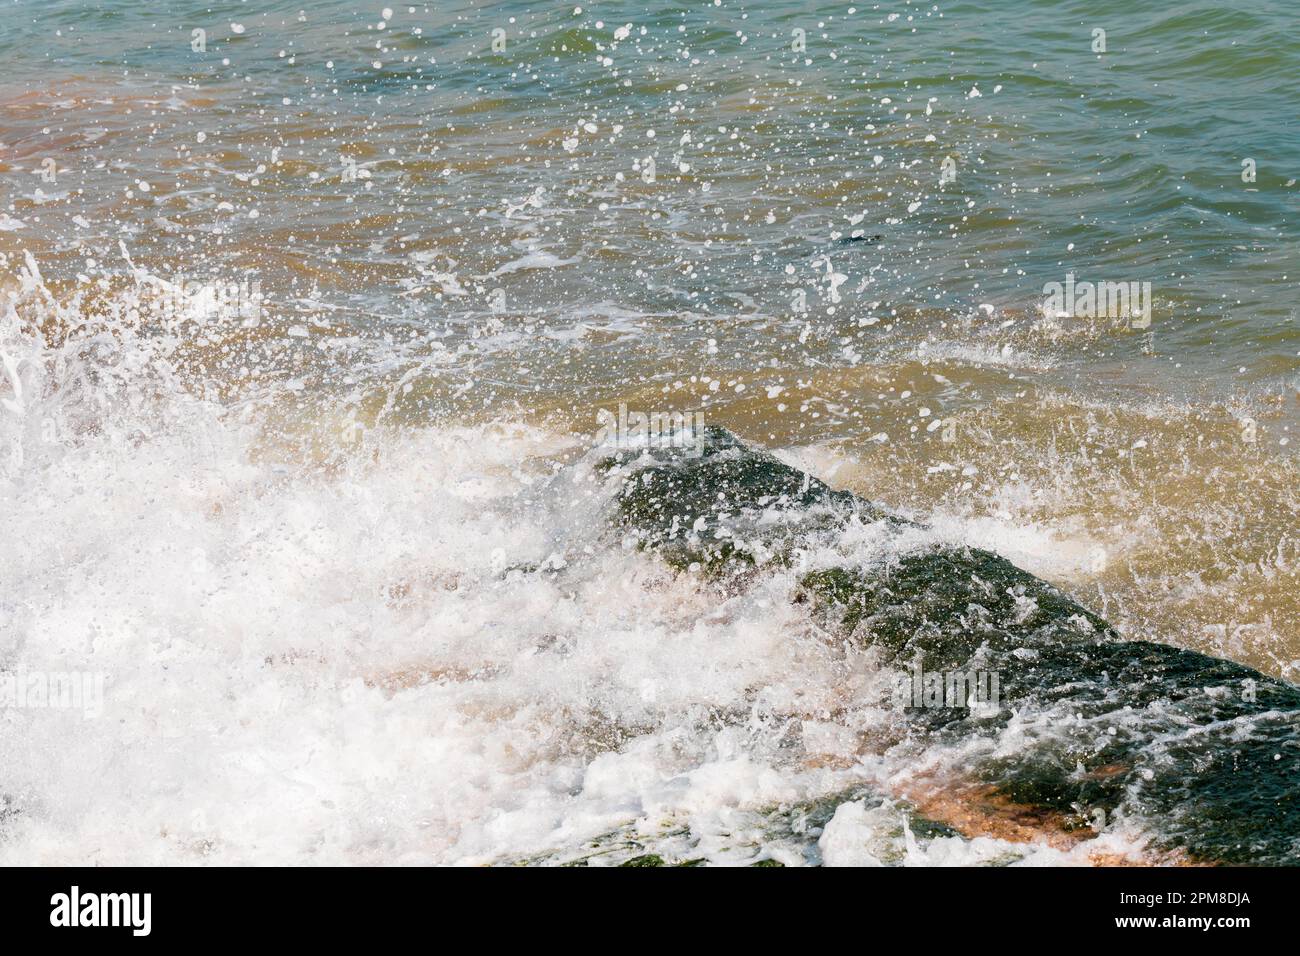 Des vagues moulantes se brisent et se brisent sur des rochers recouverts d'algues. Banque D'Images